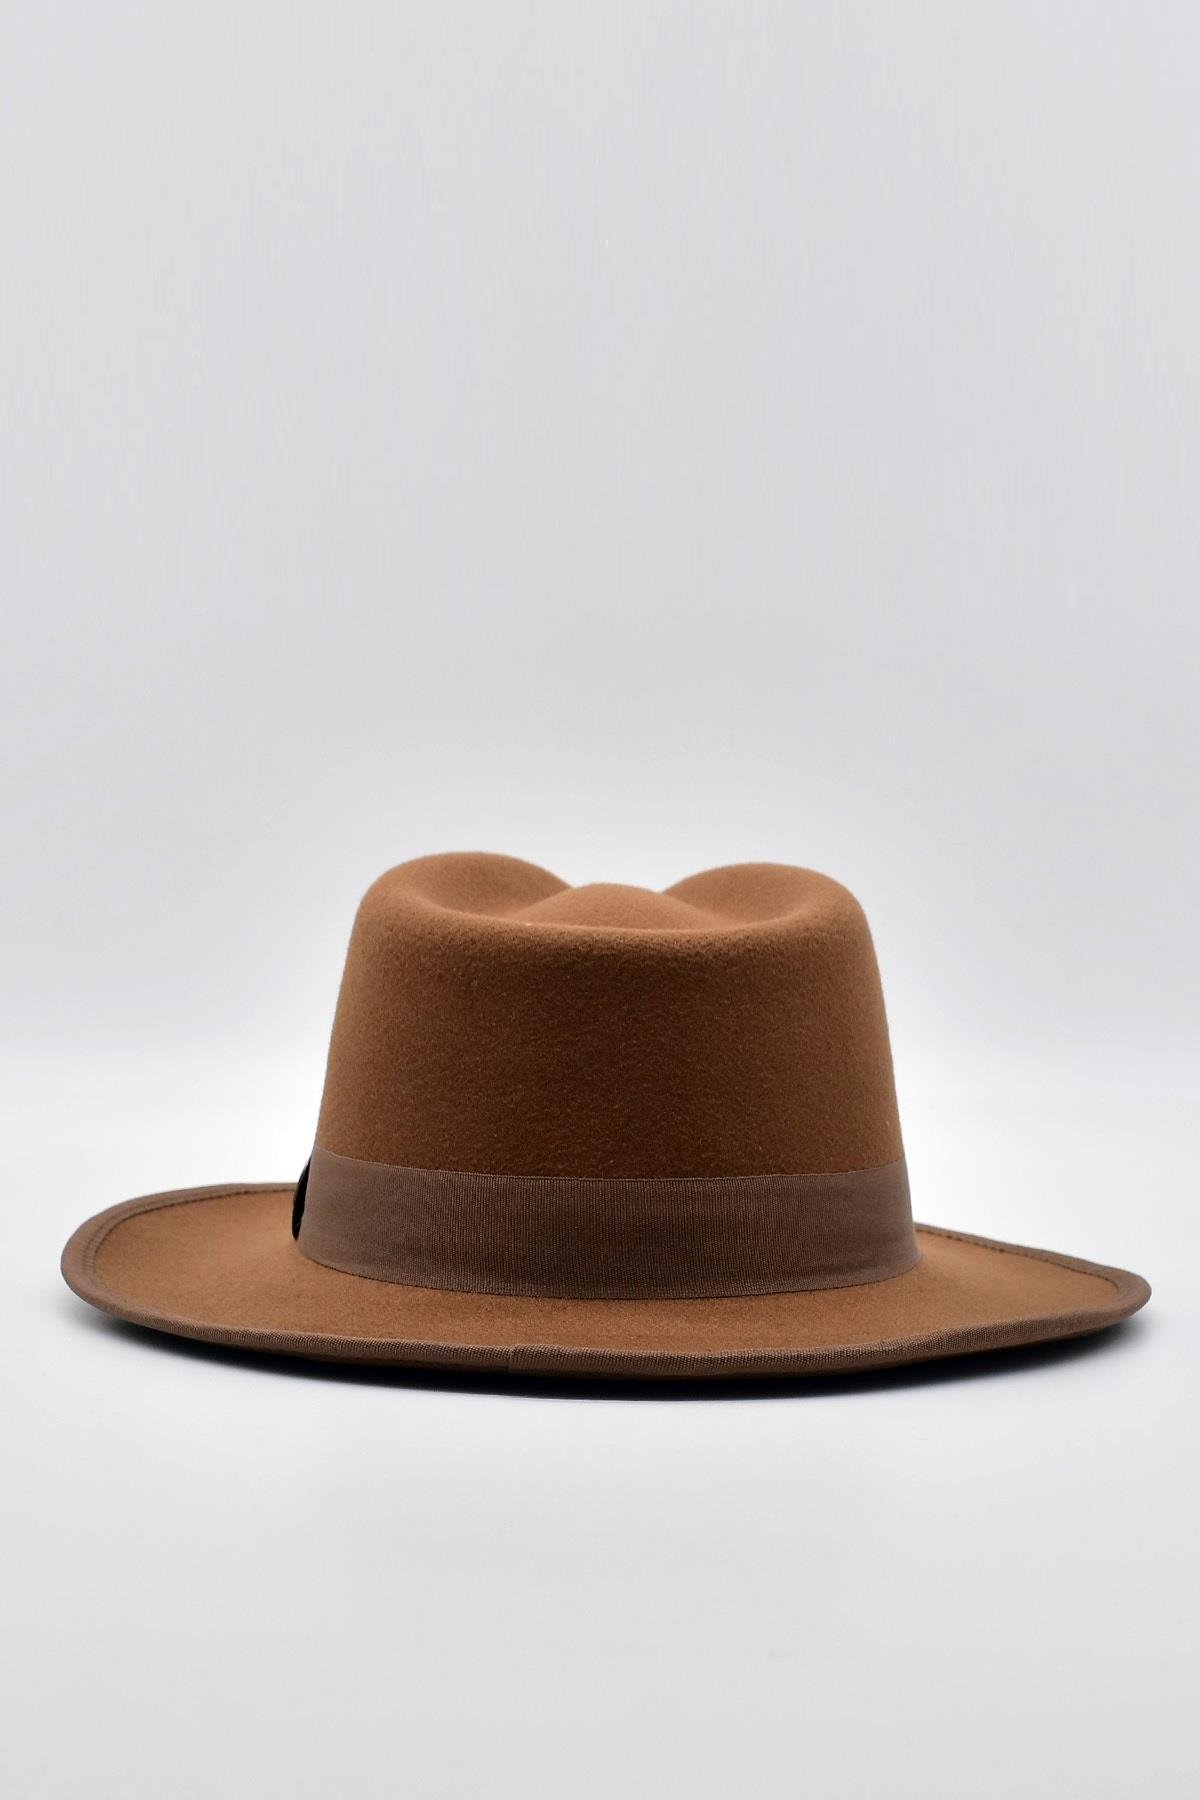 Külah Vintage Erkek Fedora Fötr Şapka Panama İngiliz Trilby Kasket Taba  KLH7375